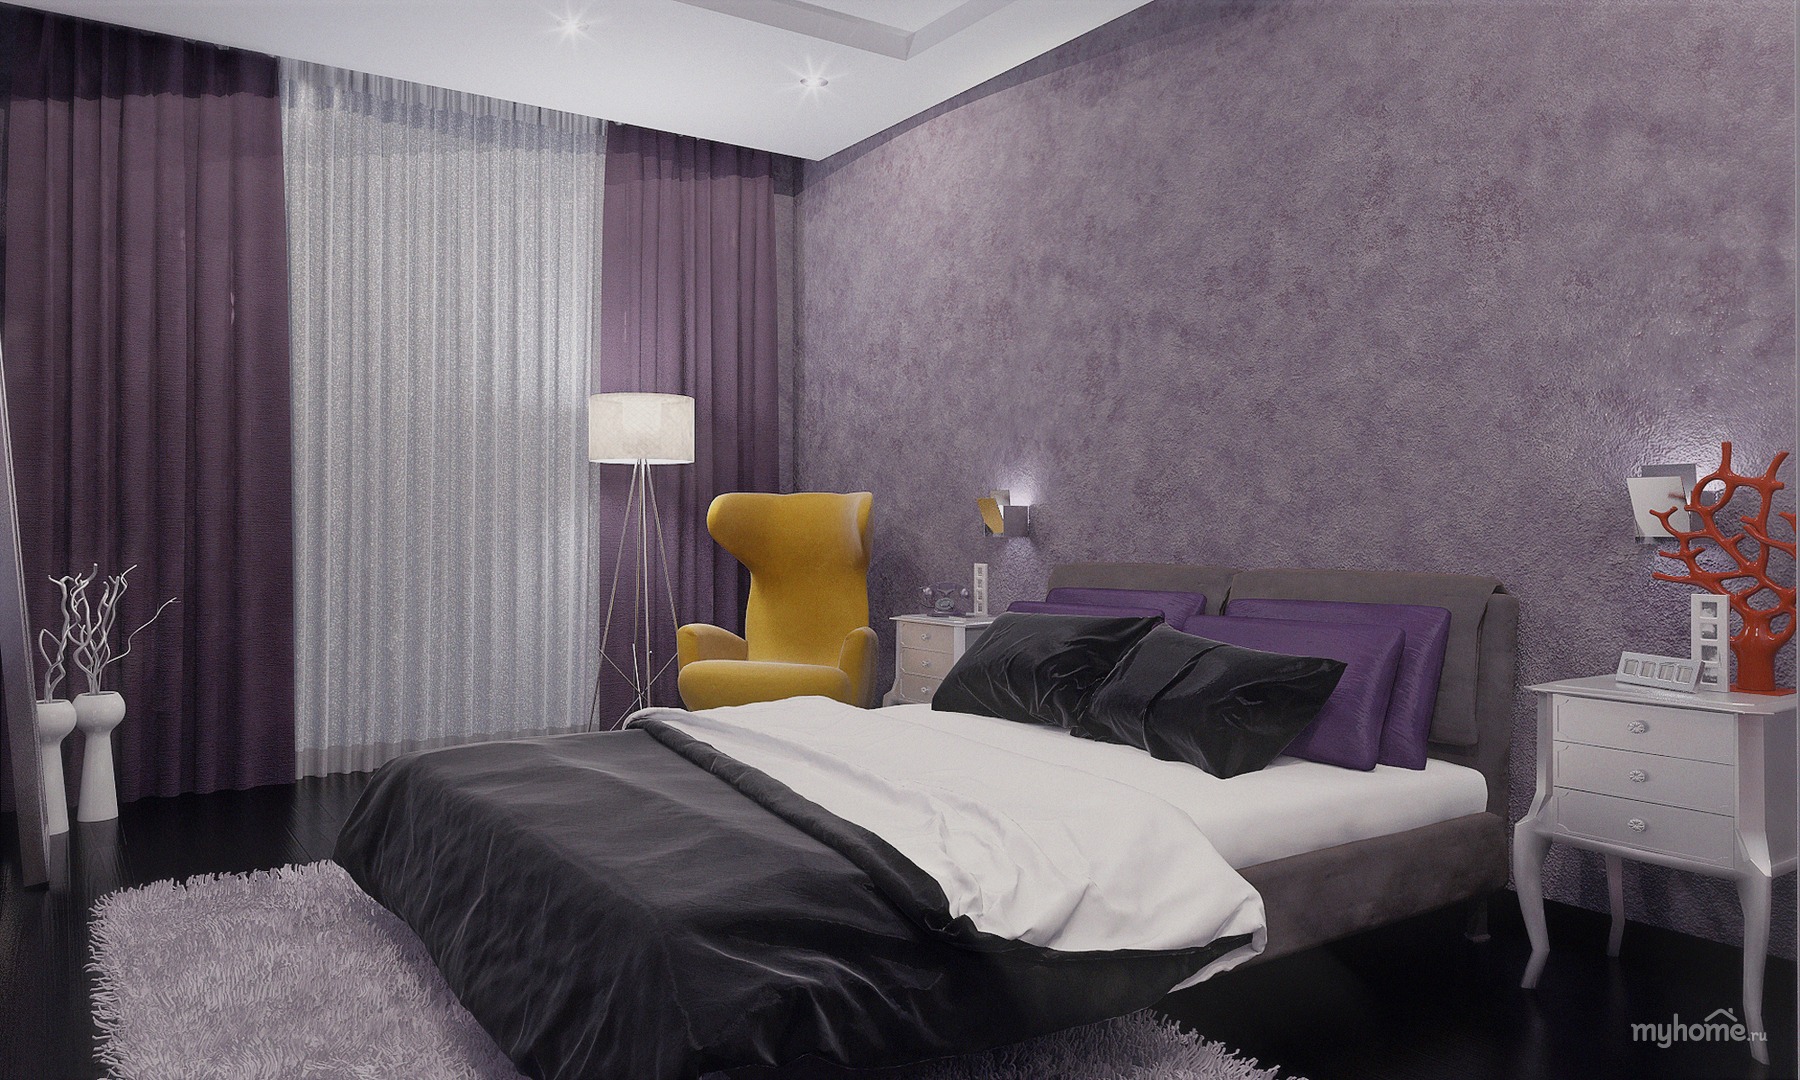 Как создать гармоничный интерьер спальни в фиолетовых тонах?